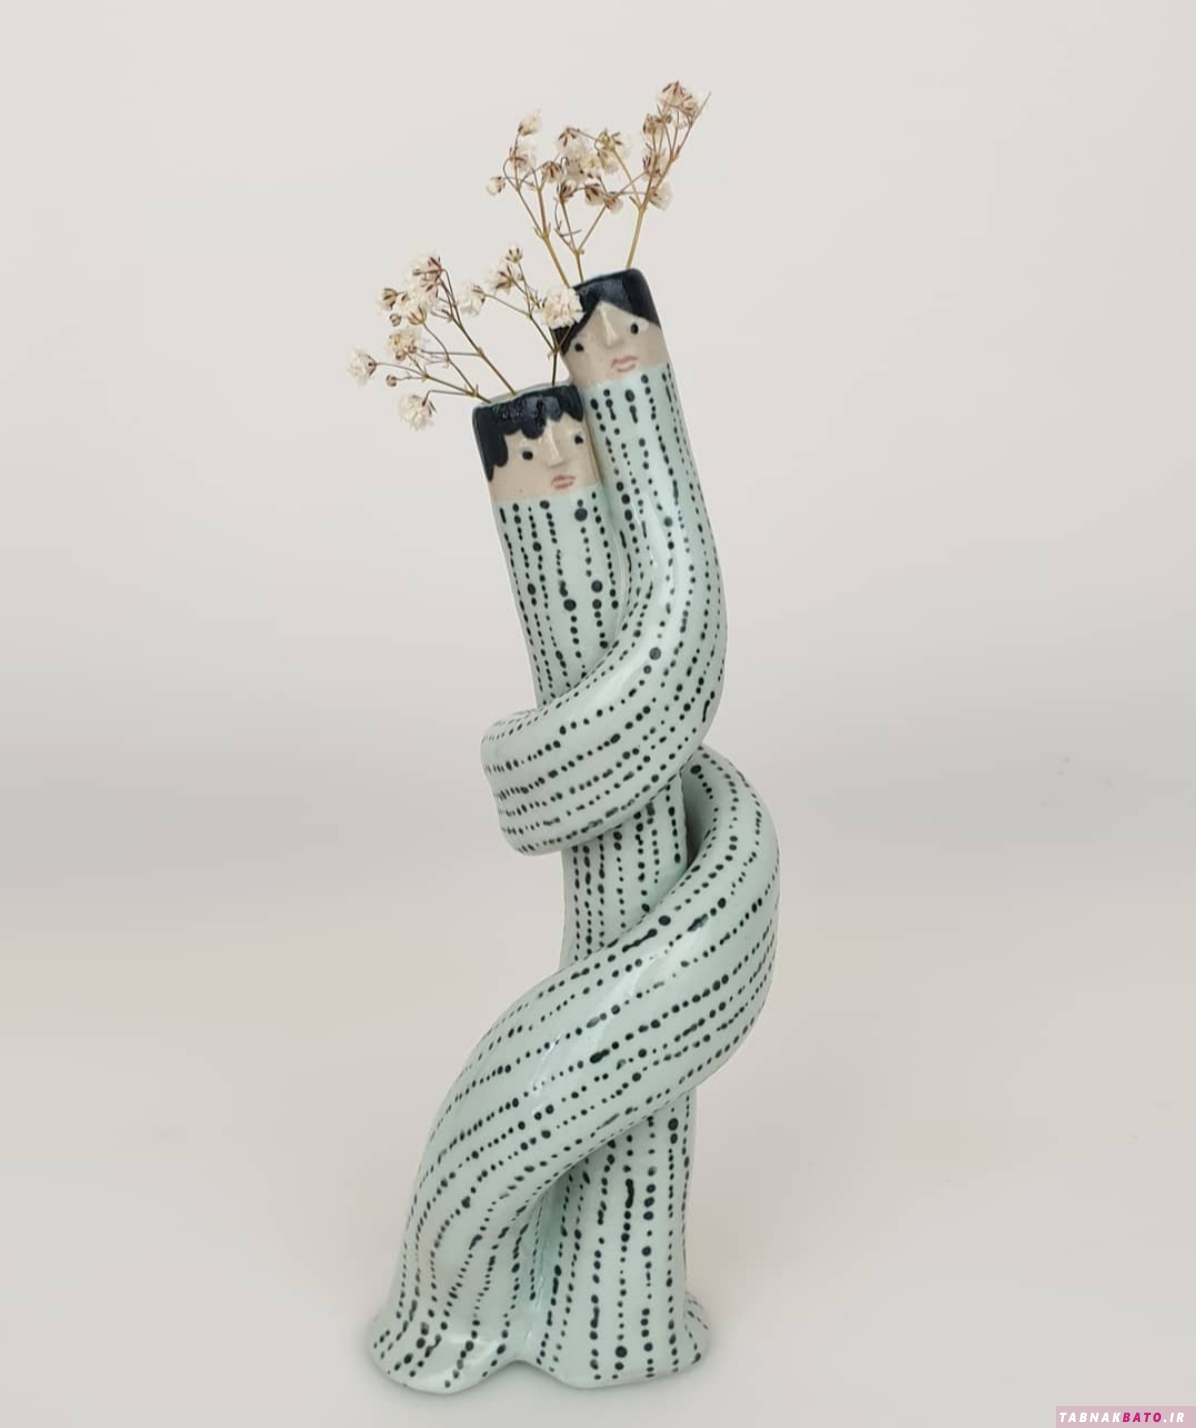 ایده های جالب ساخت گلدان و بشقاب با سفال